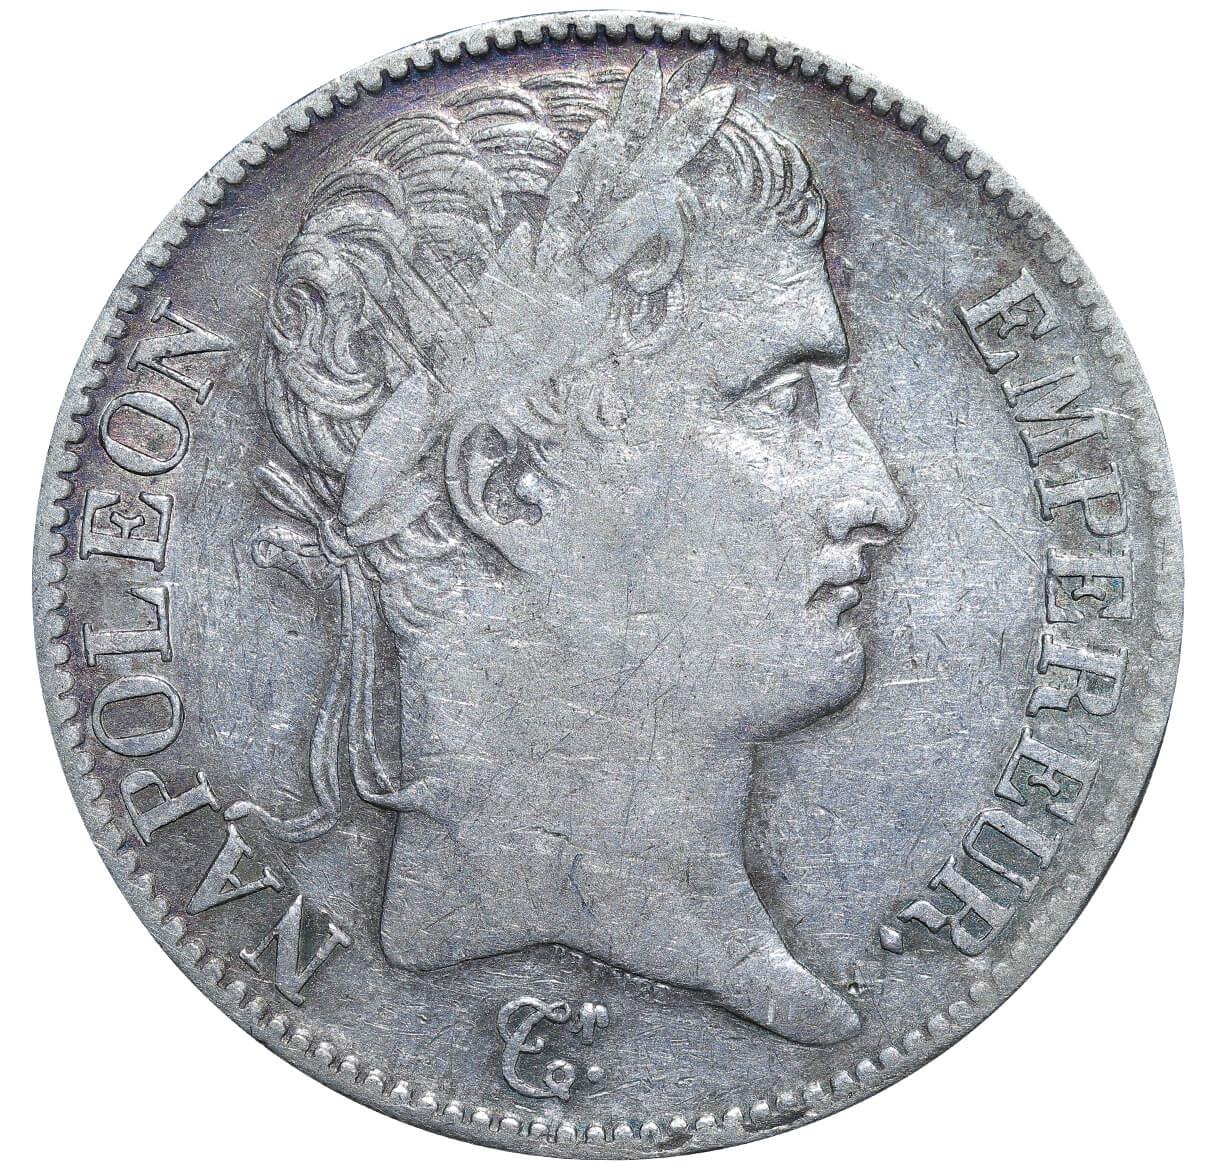 France, 5 Francs, 1811 year, I - Image 2 of 3